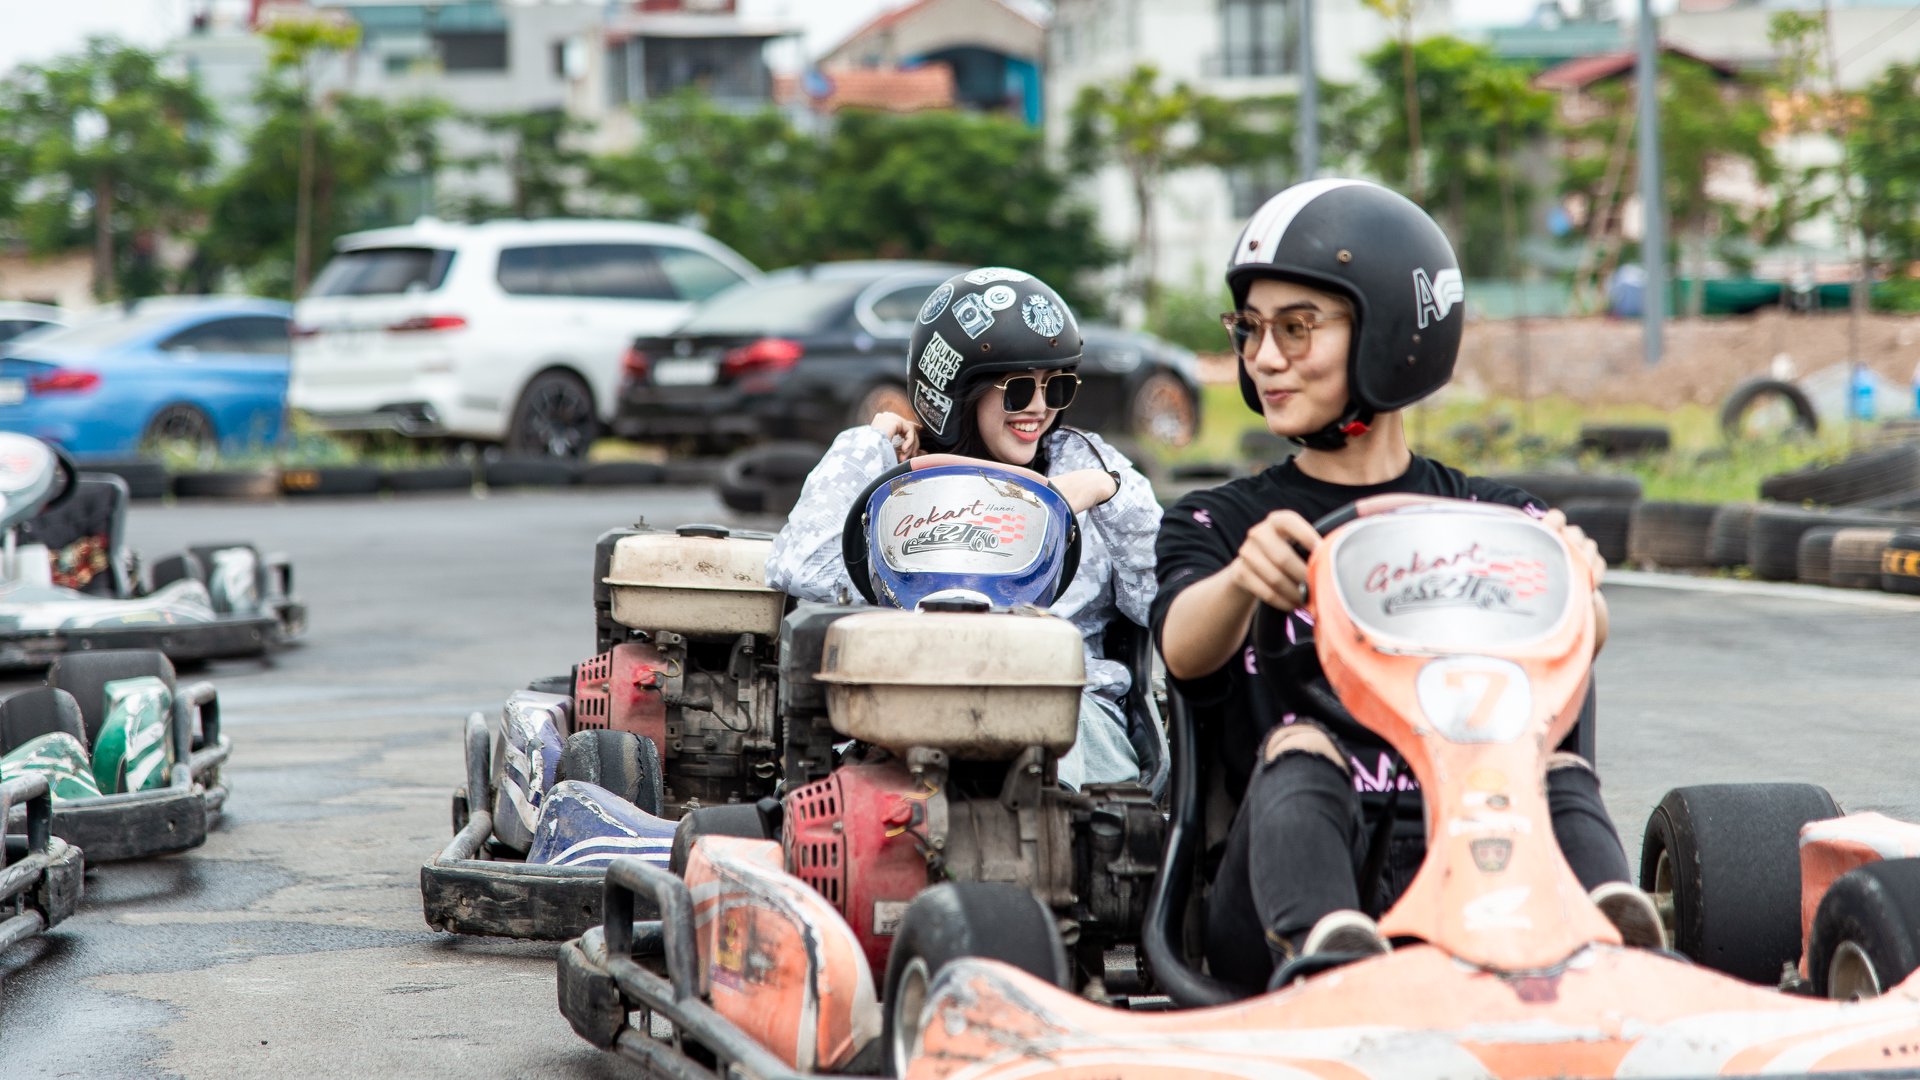 Zoom Cận Cảnh Sân Chơi “F1 Mini” 5000M2 Đẹp Không Góc Chết Tại Go Kart  Hanoi | Tin Tức Hahalolo